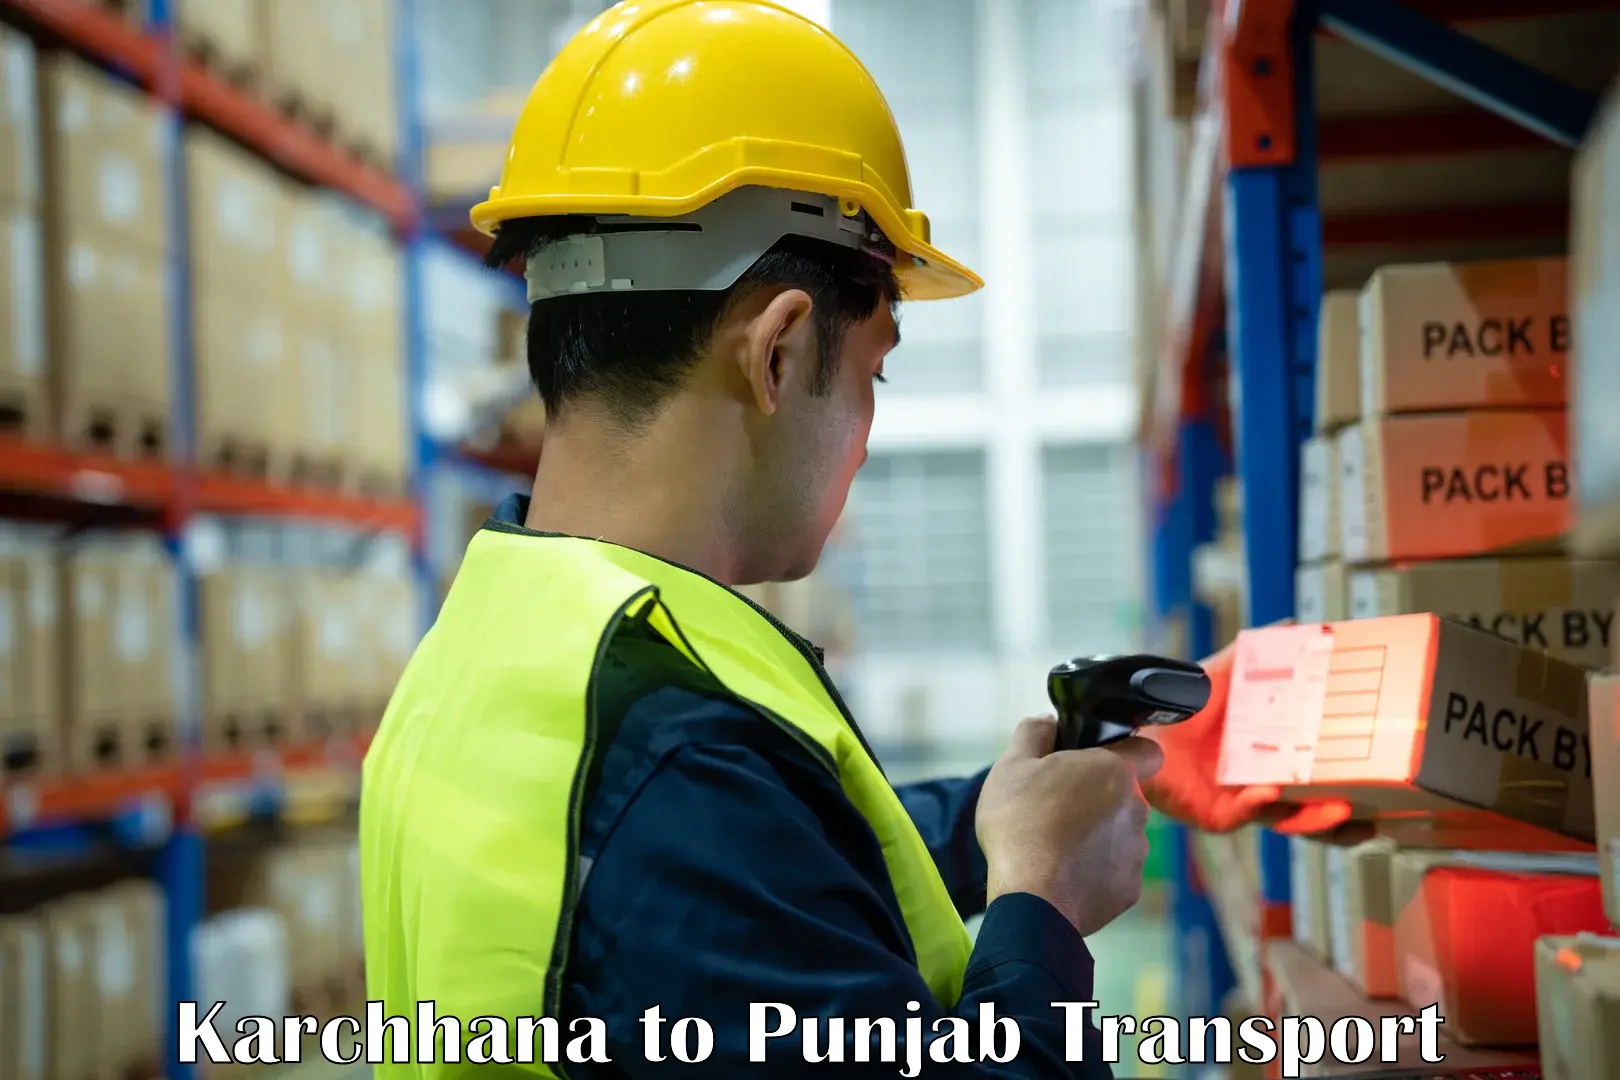 Air cargo transport services Karchhana to Punjab